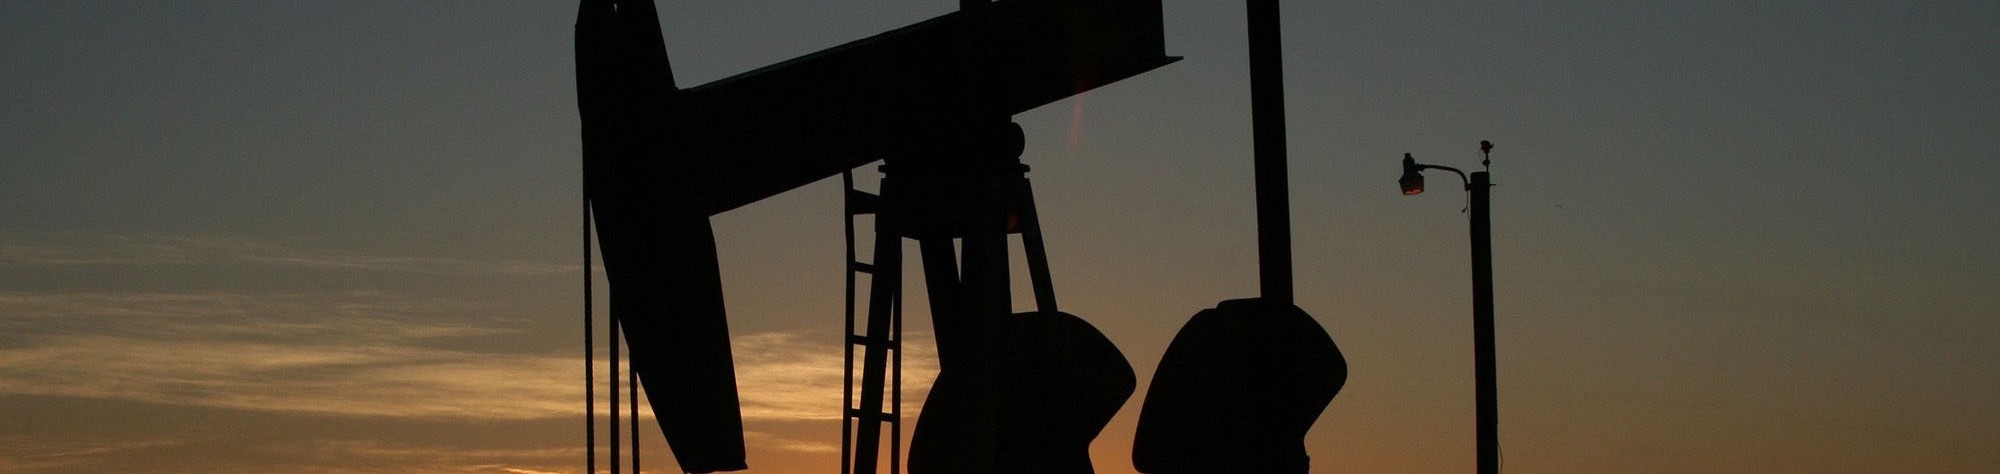 An oil rig at dusk